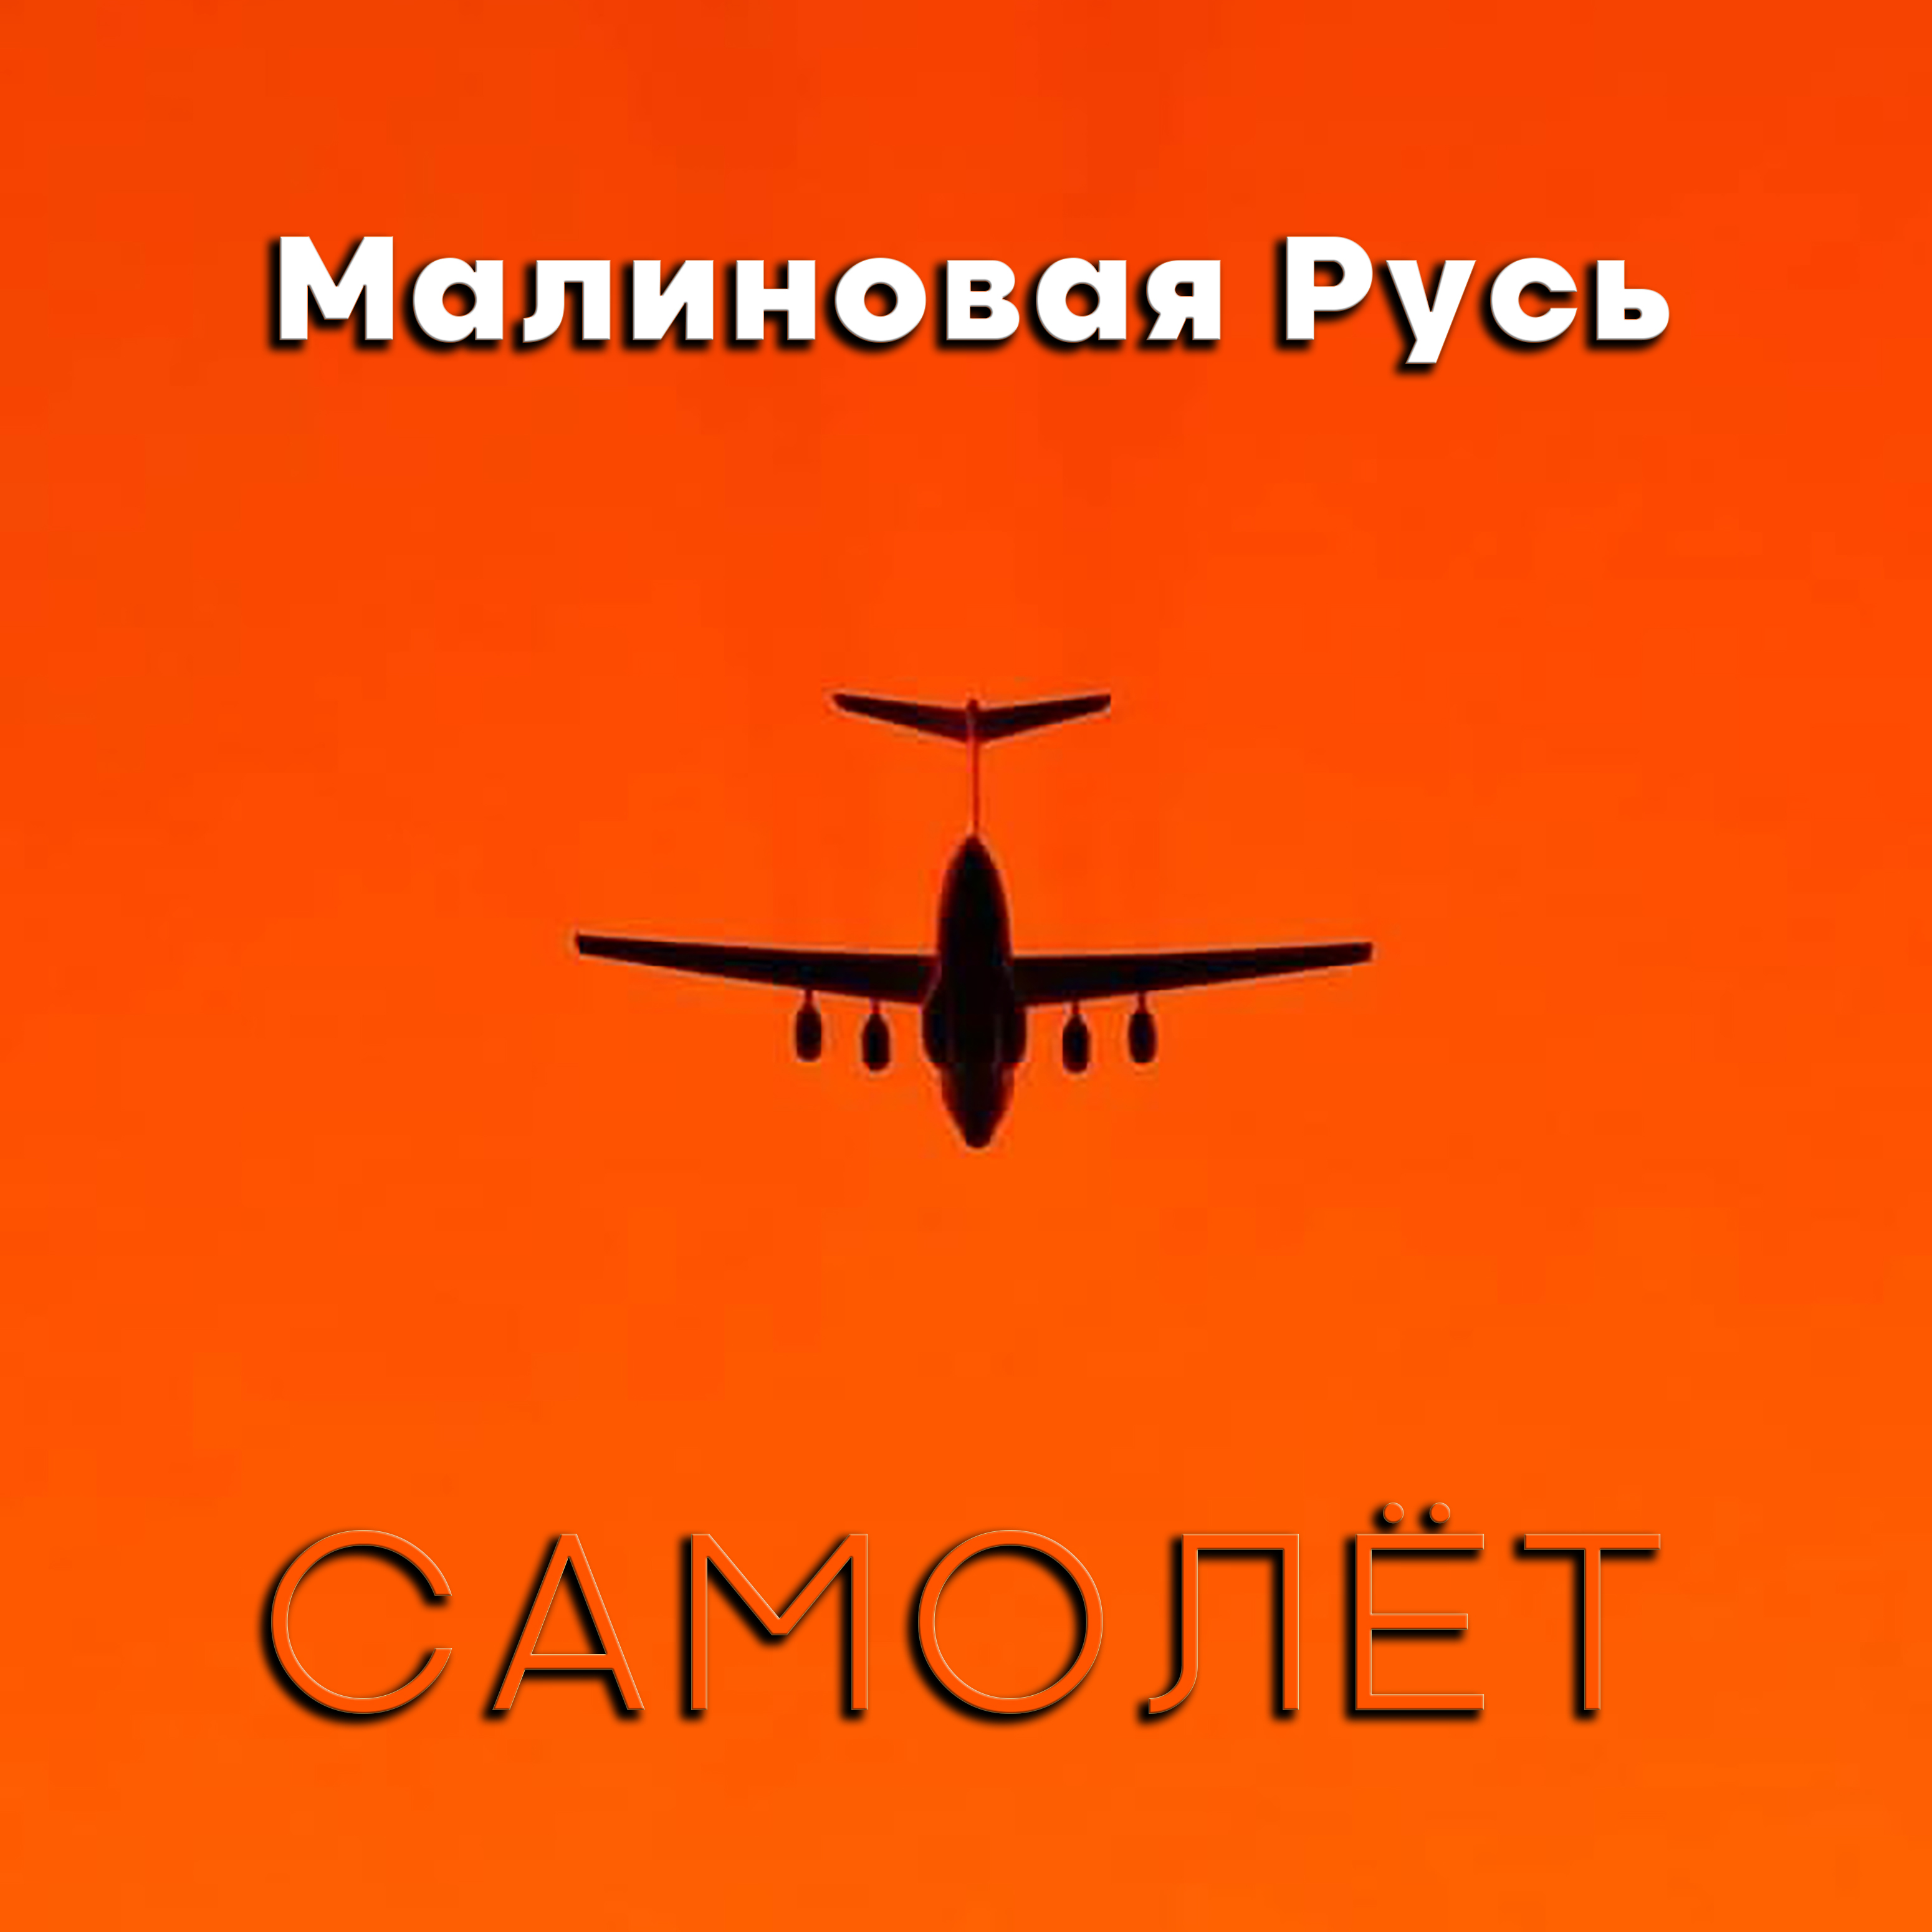 Малиновая Русь - "Самолёт" - проект Ильи Гусева.